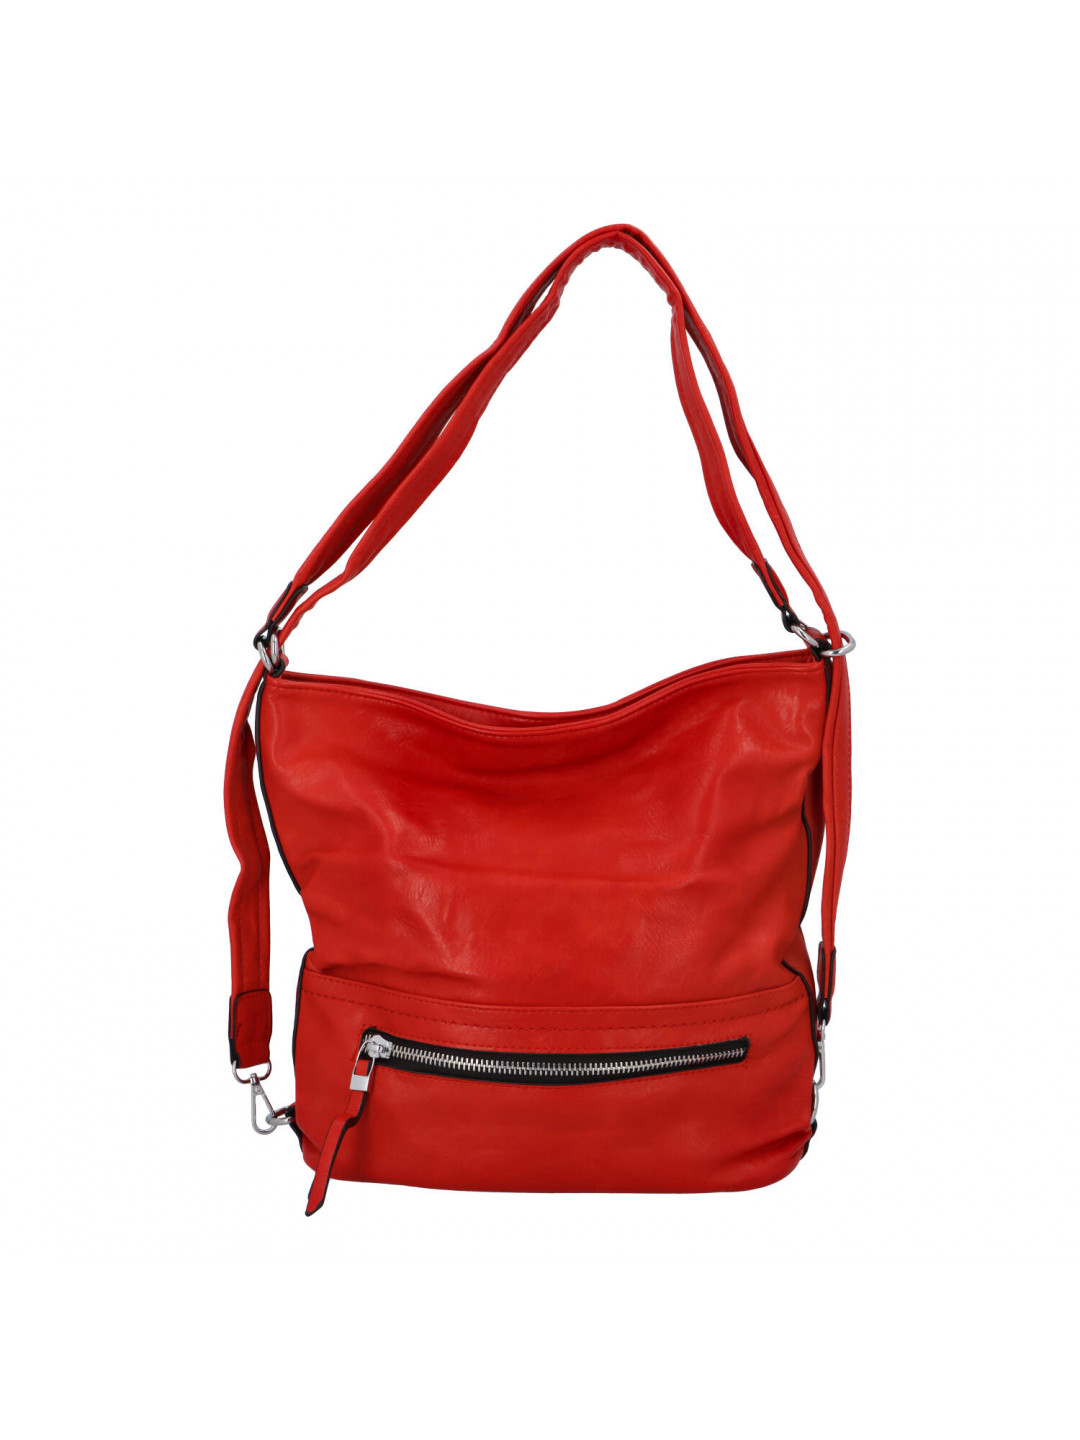 Moderní dámský koženkový kabelko batoh červený